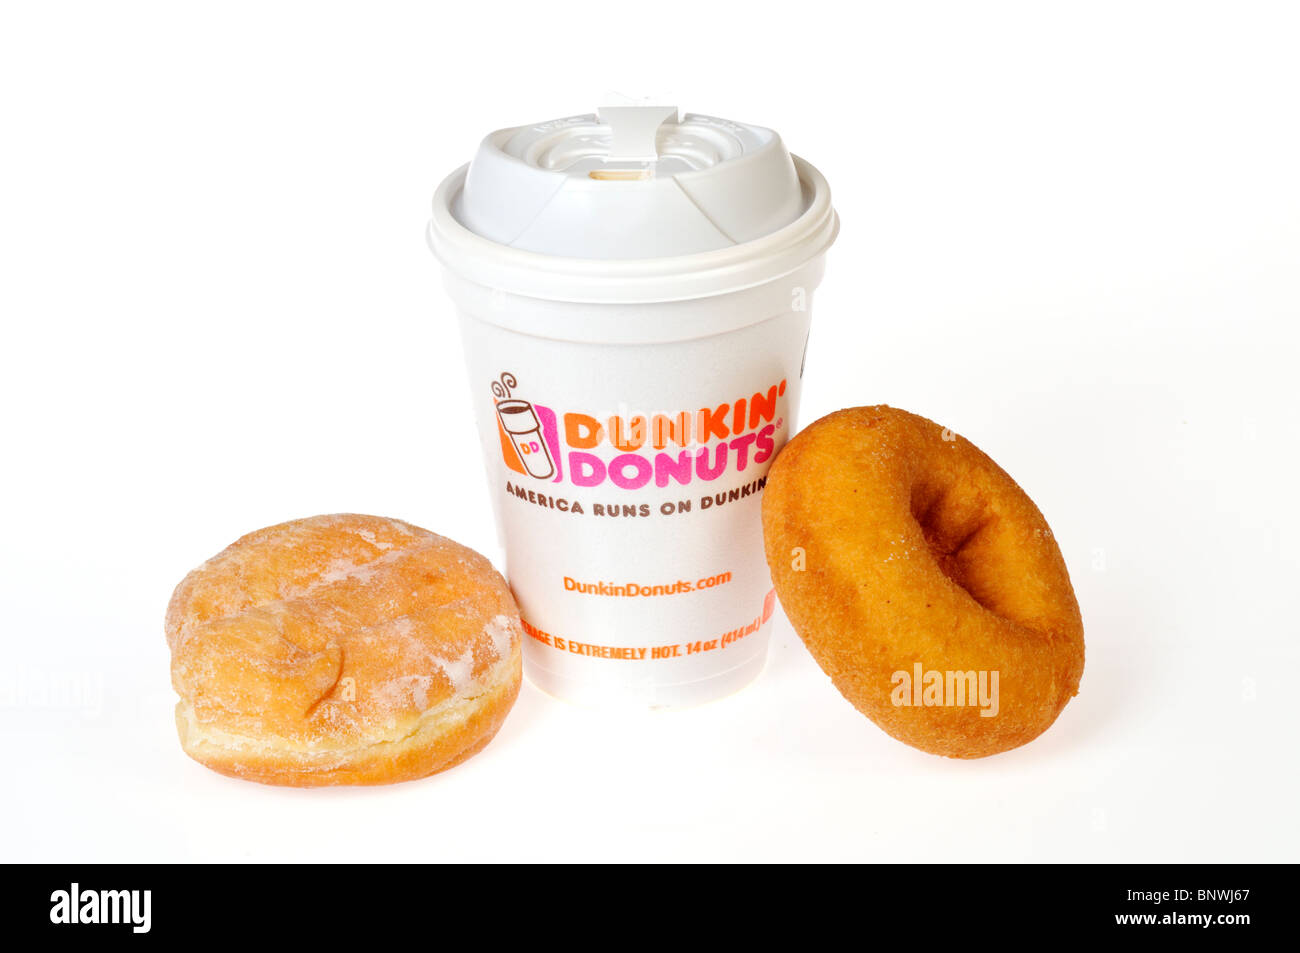 Eine heiße Tasse Dunkin Donuts Kaffee mit einem schlicht und Gelee Donuts auf einer dunkin Dounuts Serviette auf einem weißen Hintergrund. Stockfoto